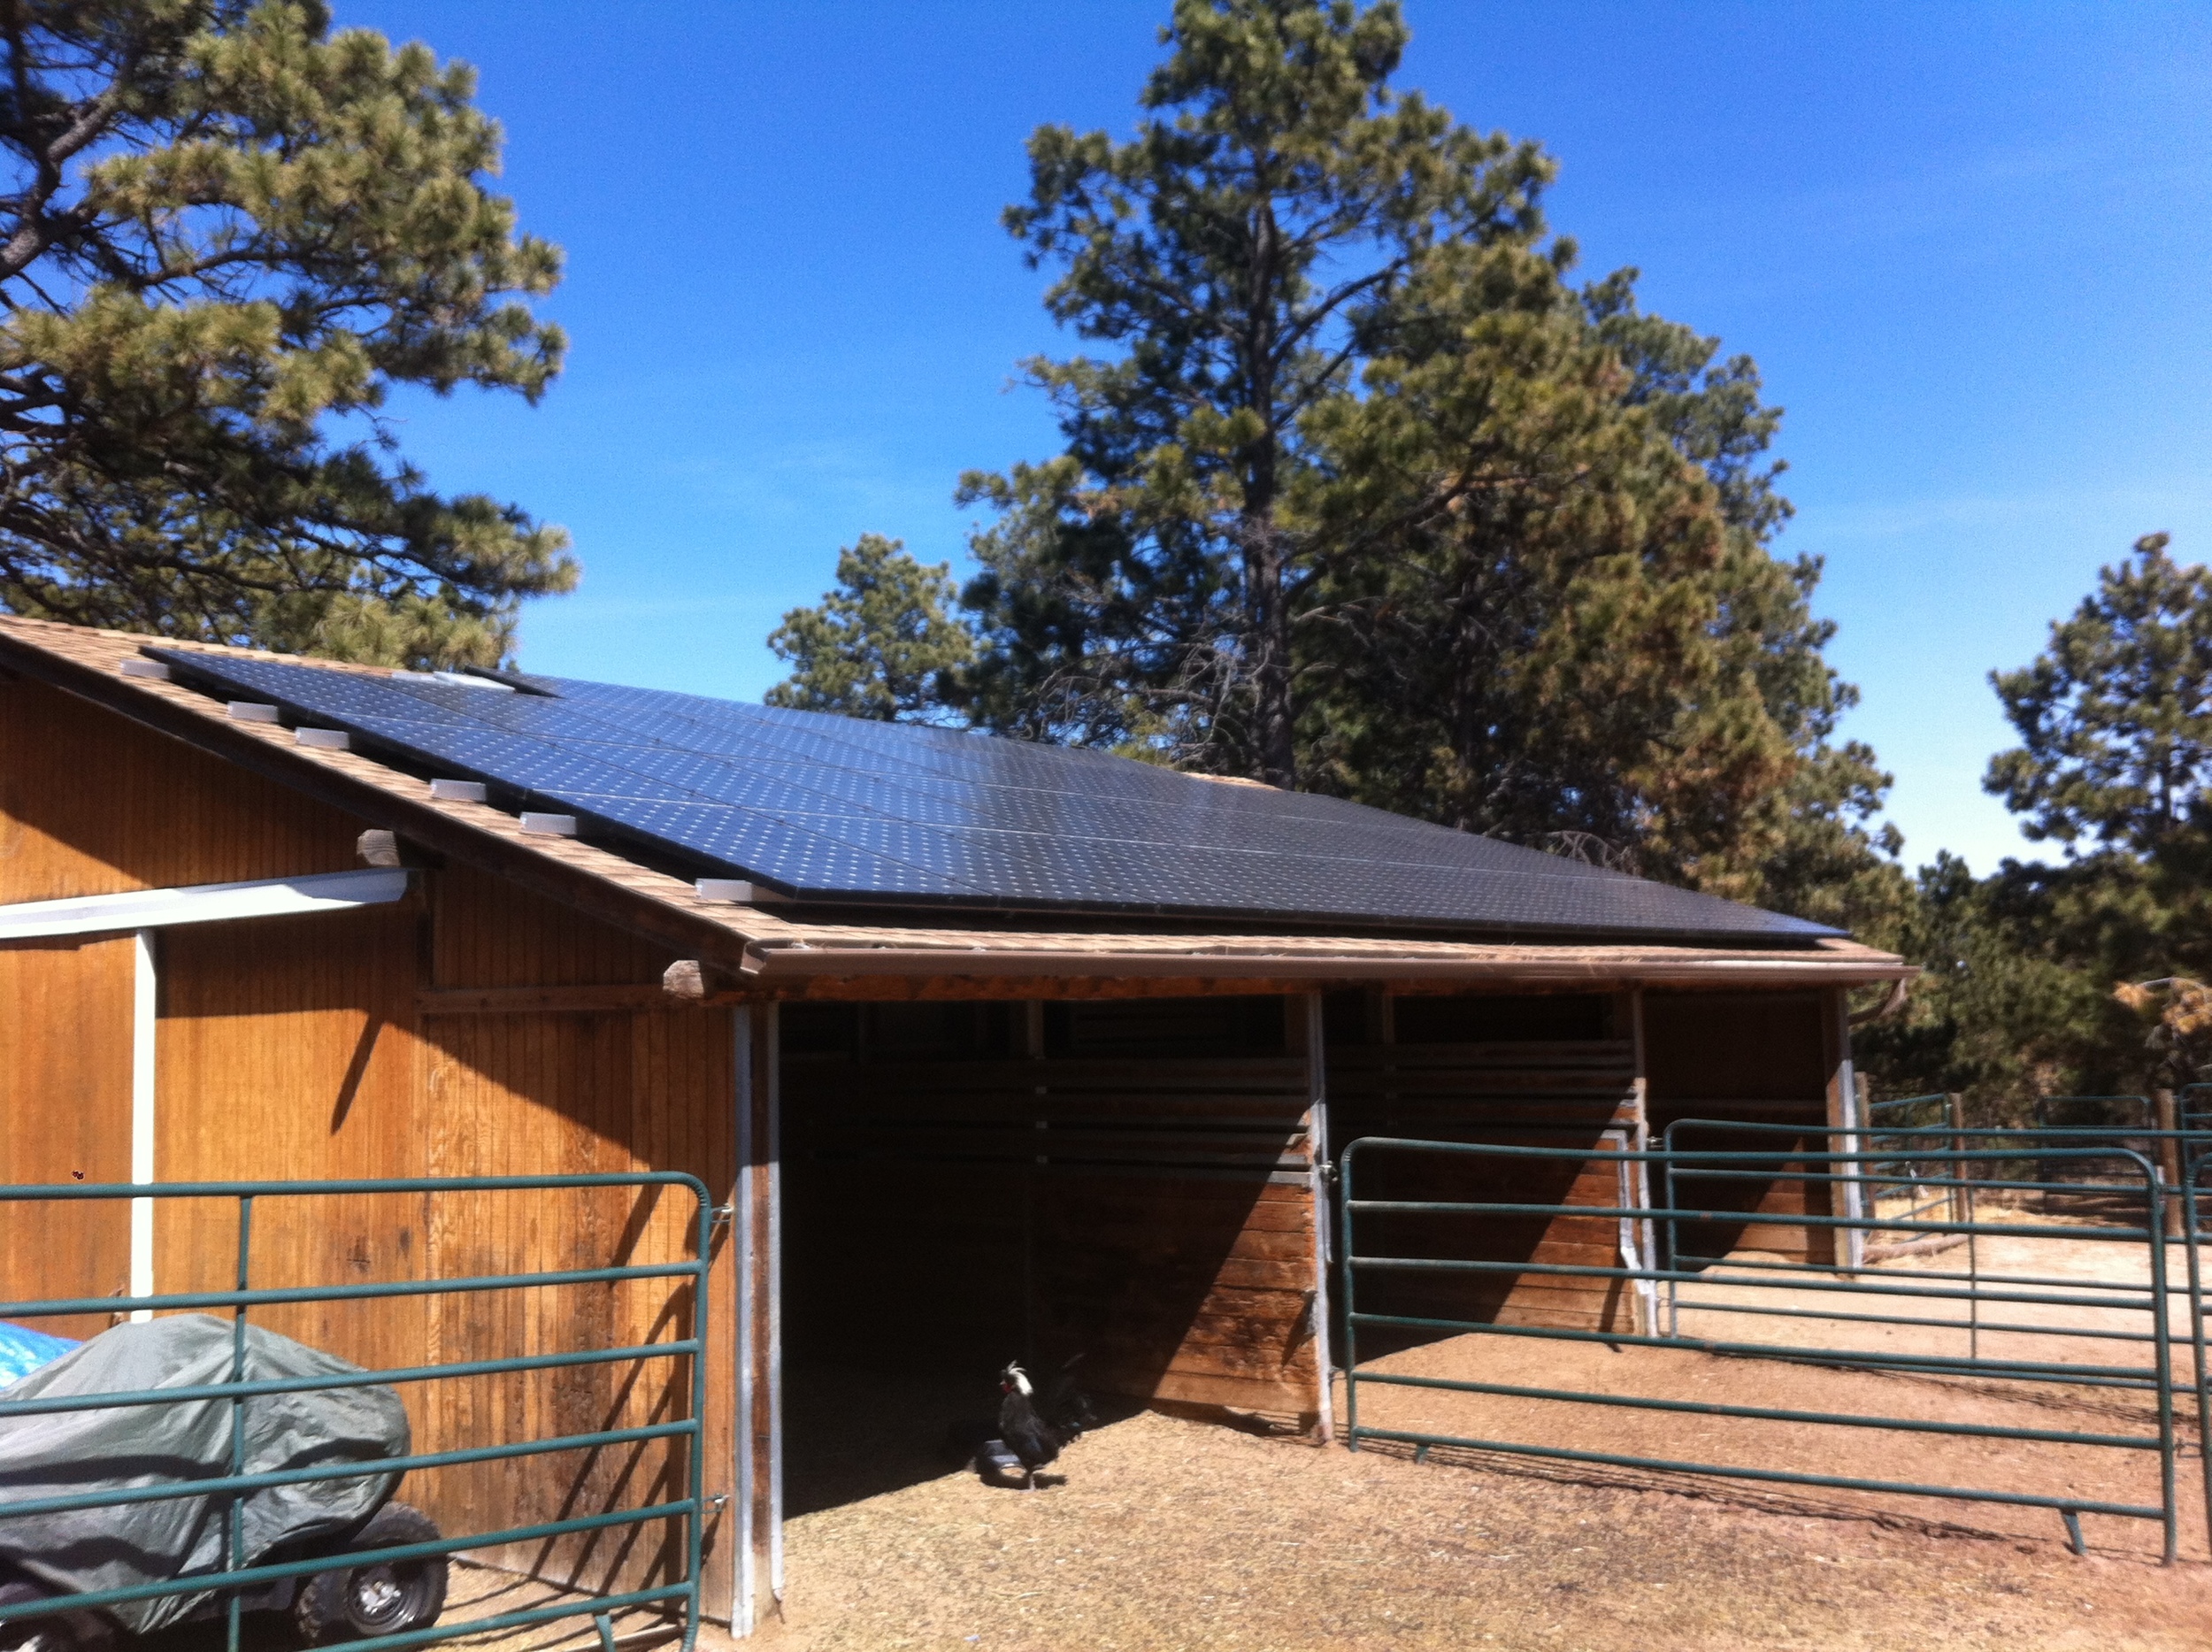 Stable Roof Solar Panels.JPG